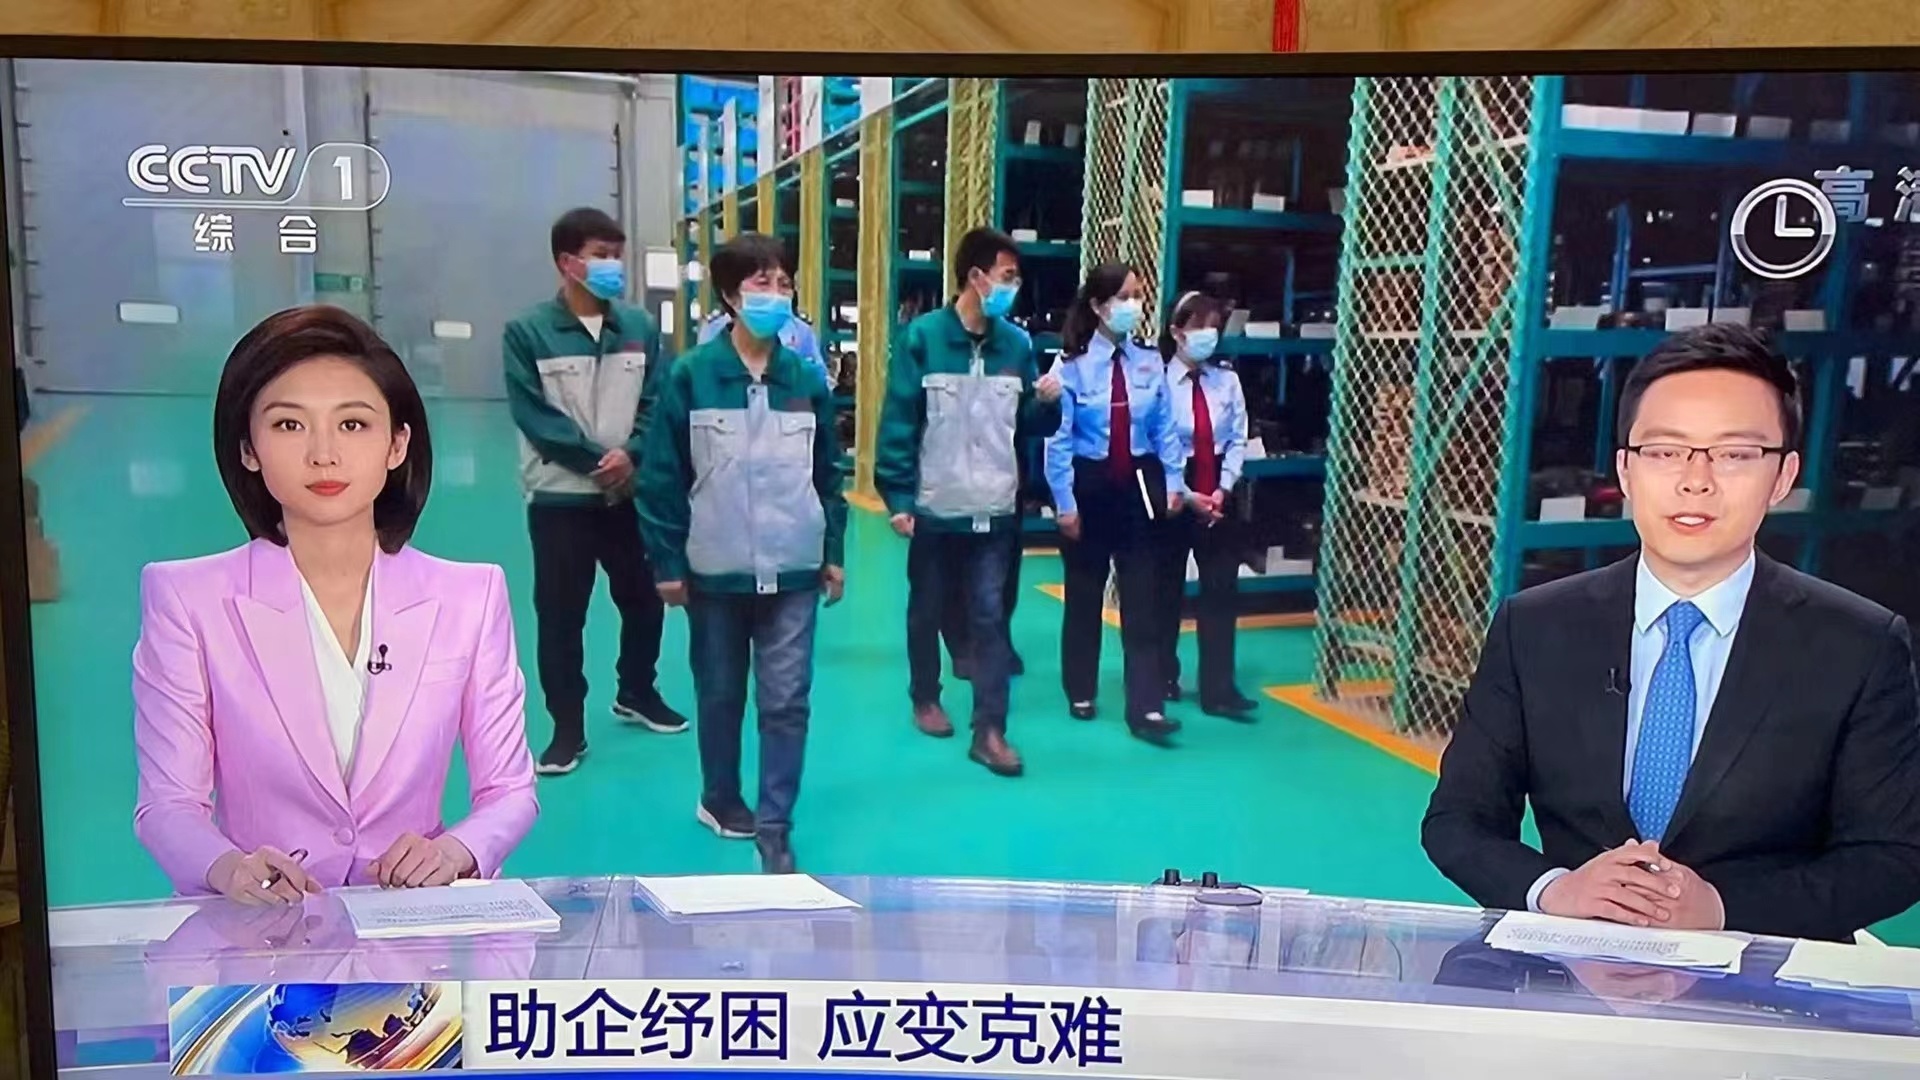 La fuerza de la marca de defensa del puente muestra, Zhongbo Group, ganó el CCTV.